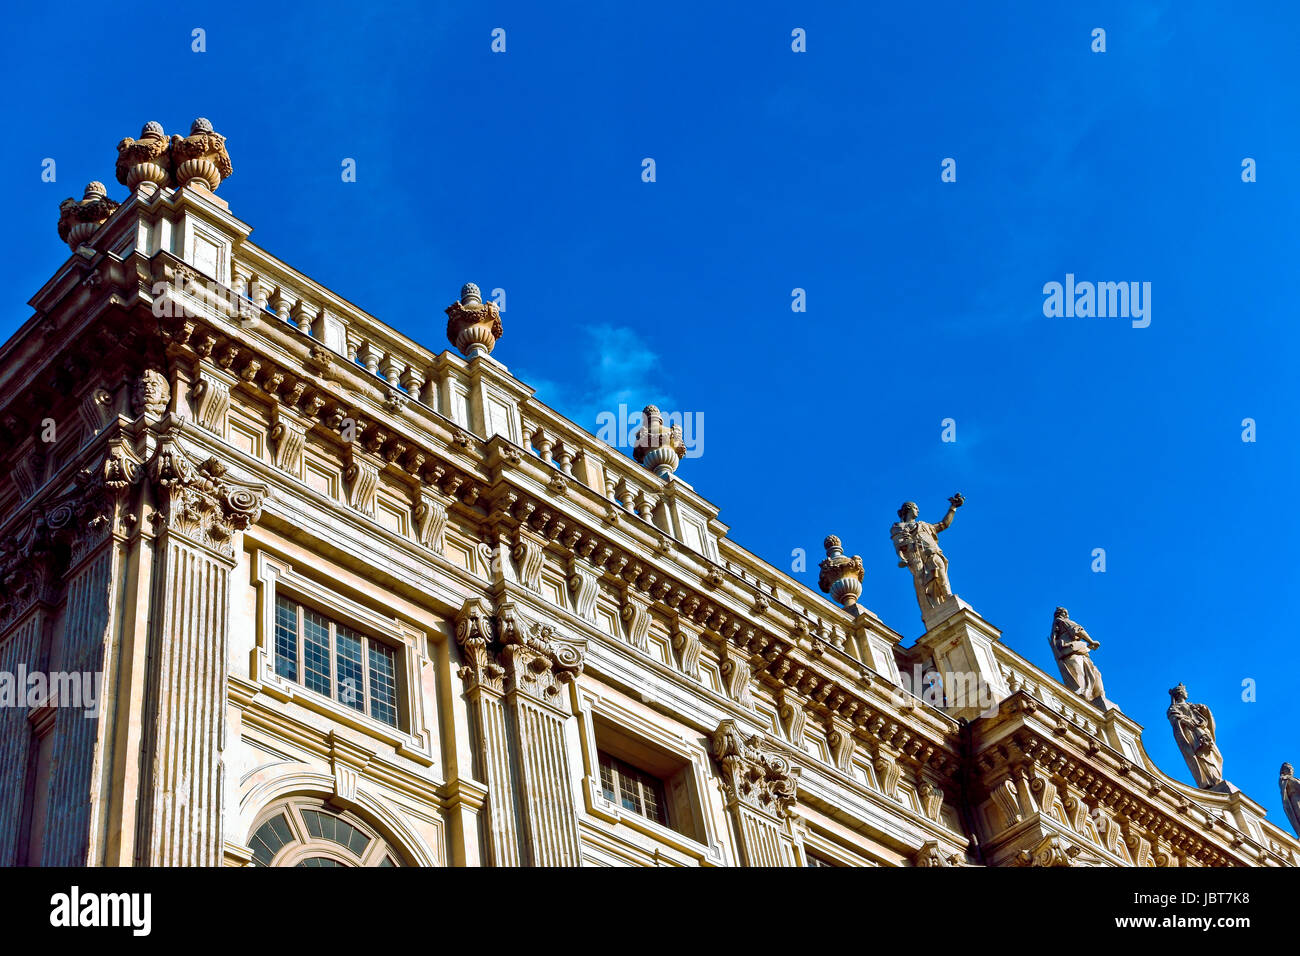 Palazzo Madama. Palazzo di facciata classica barocca. Museo di Arte Antica di Torino con vista ad angolo basso. Torino, Piemonte, Italia, Europa, UE. Foto Stock